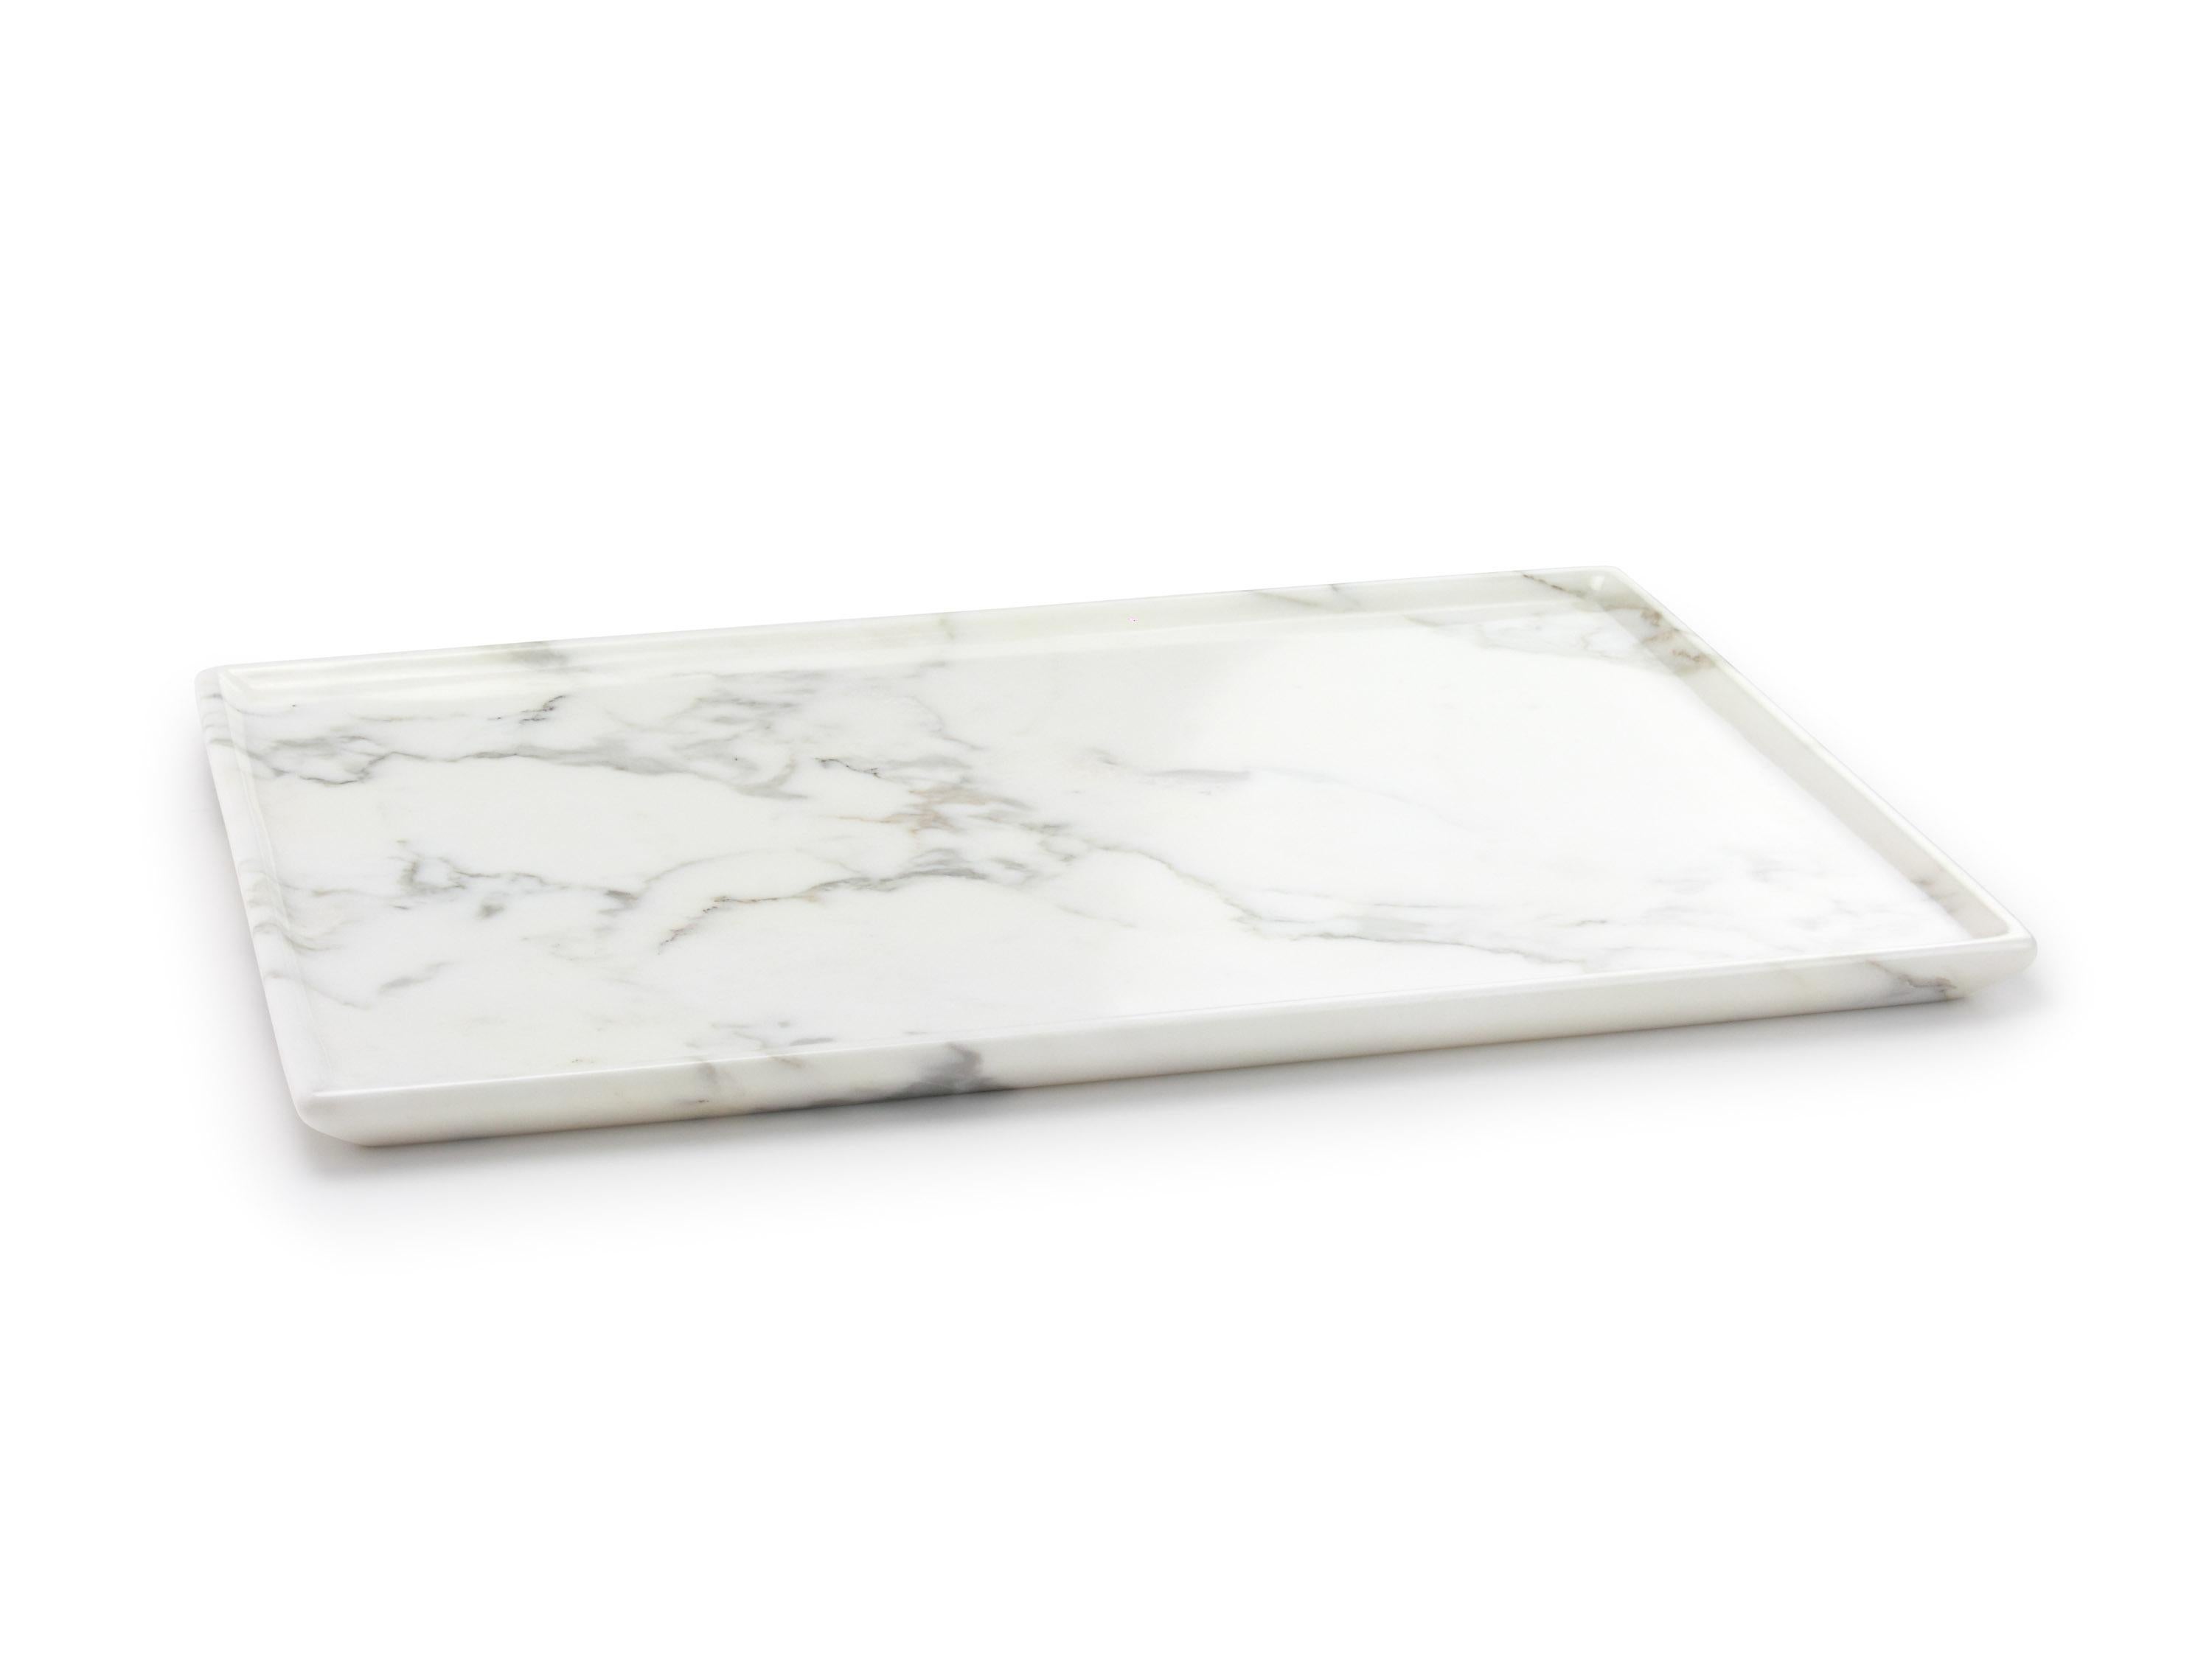 Plateaux ou plats de service sculptés à la main dans un bloc massif de marbre blanc de Calacatta. Dimensions du plateau : L 40, L 29,5, H 2 cm, disponible en différents marbres et onyx.

Le marbre est un matériau naturel, chaque pièce est unique